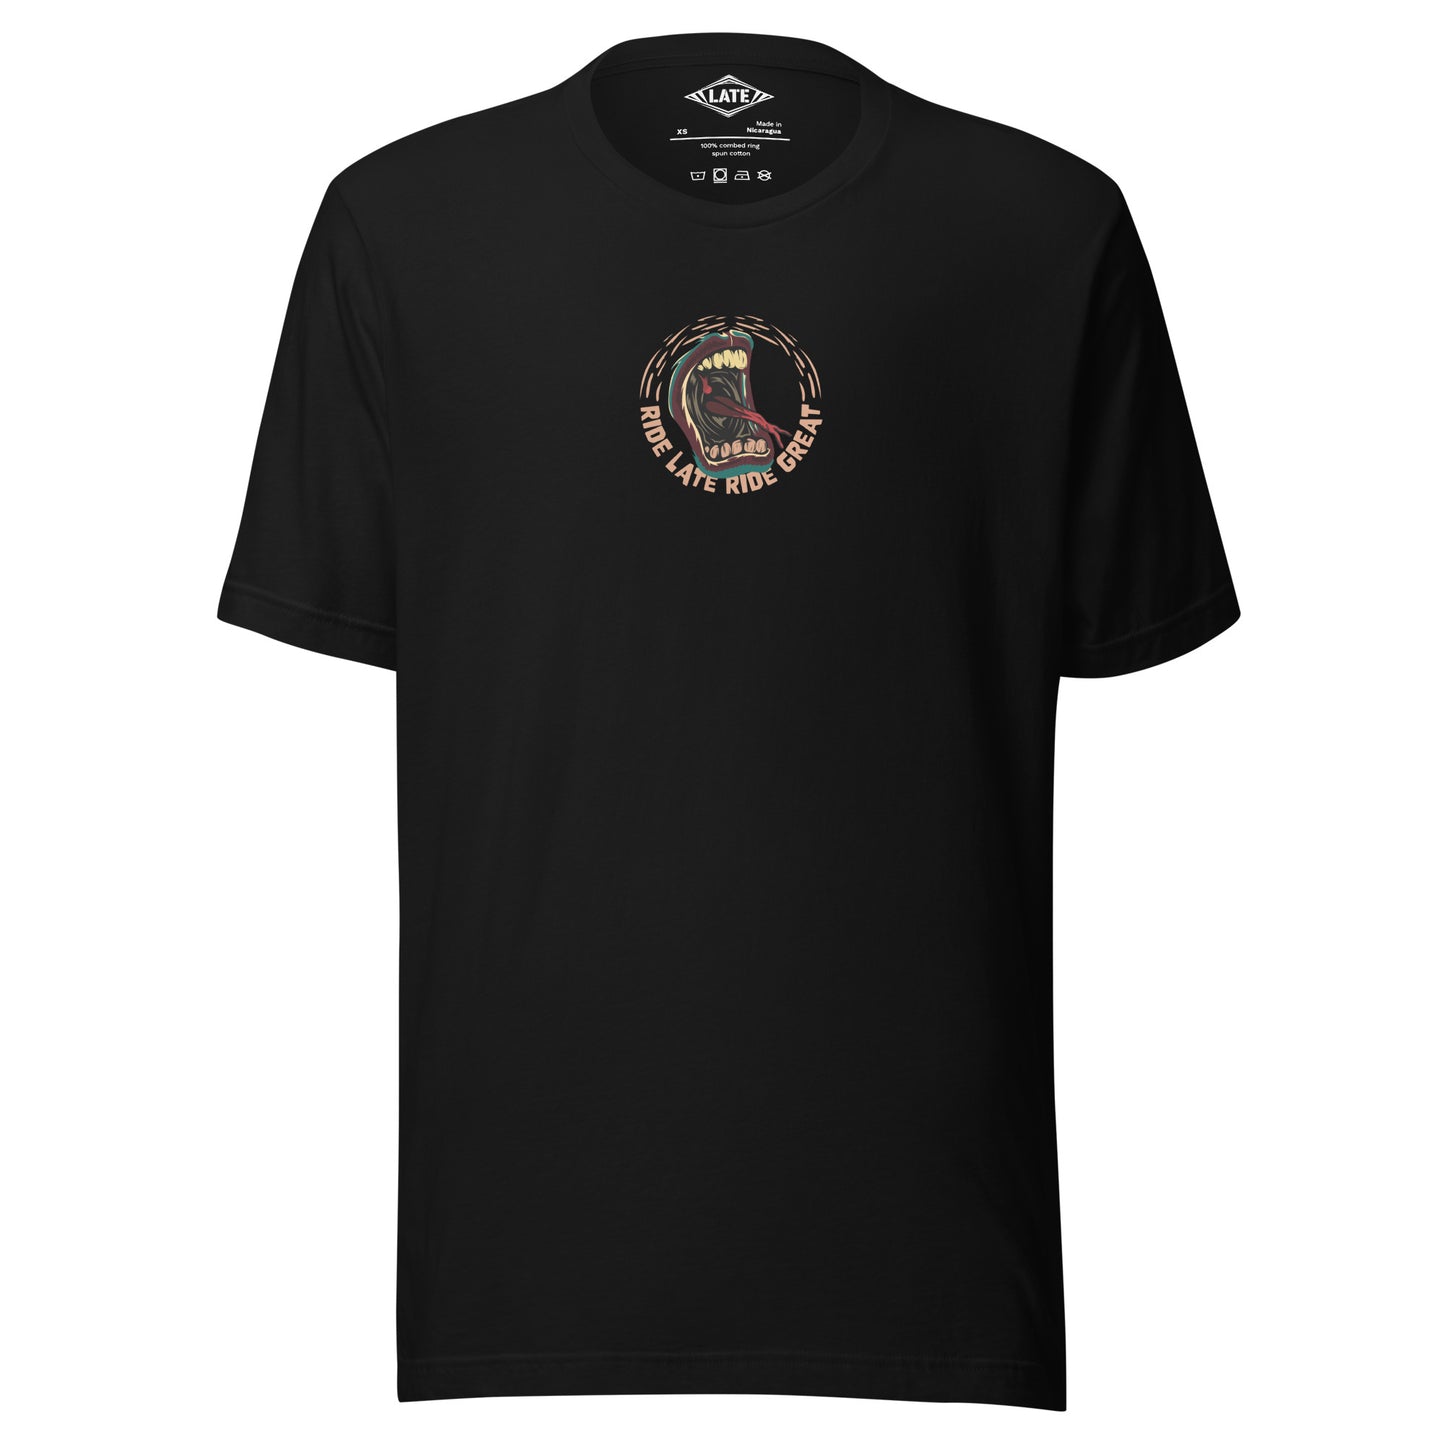 T-Shirt Ride Late Live Great skate style volcom avec un design de bouche qui tire la langue couleur du t-shirt unisex noir